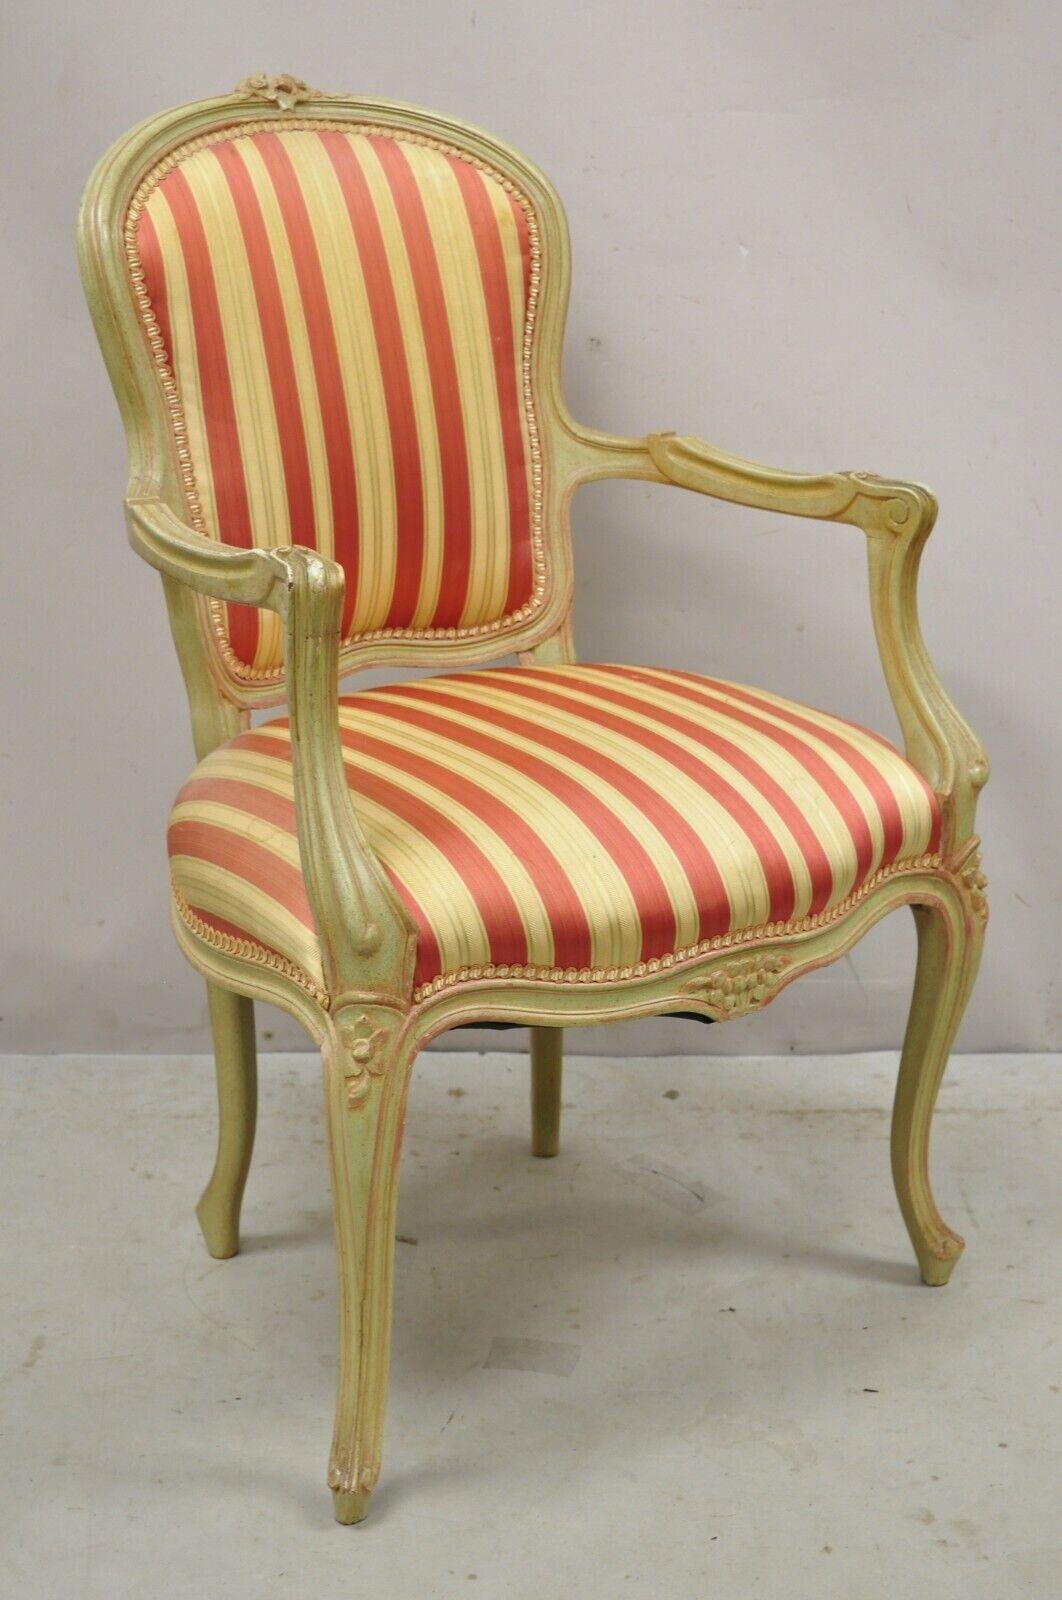 Vintage French Louis XV Style Green & Pink Painted Arm Chair Fauteuil Striped Fabric. Cet objet présente une finition peinte en détresse verte et rose, un cadre en bois massif, des détails joliment sculptés, un très bel objet ancien, un style et une